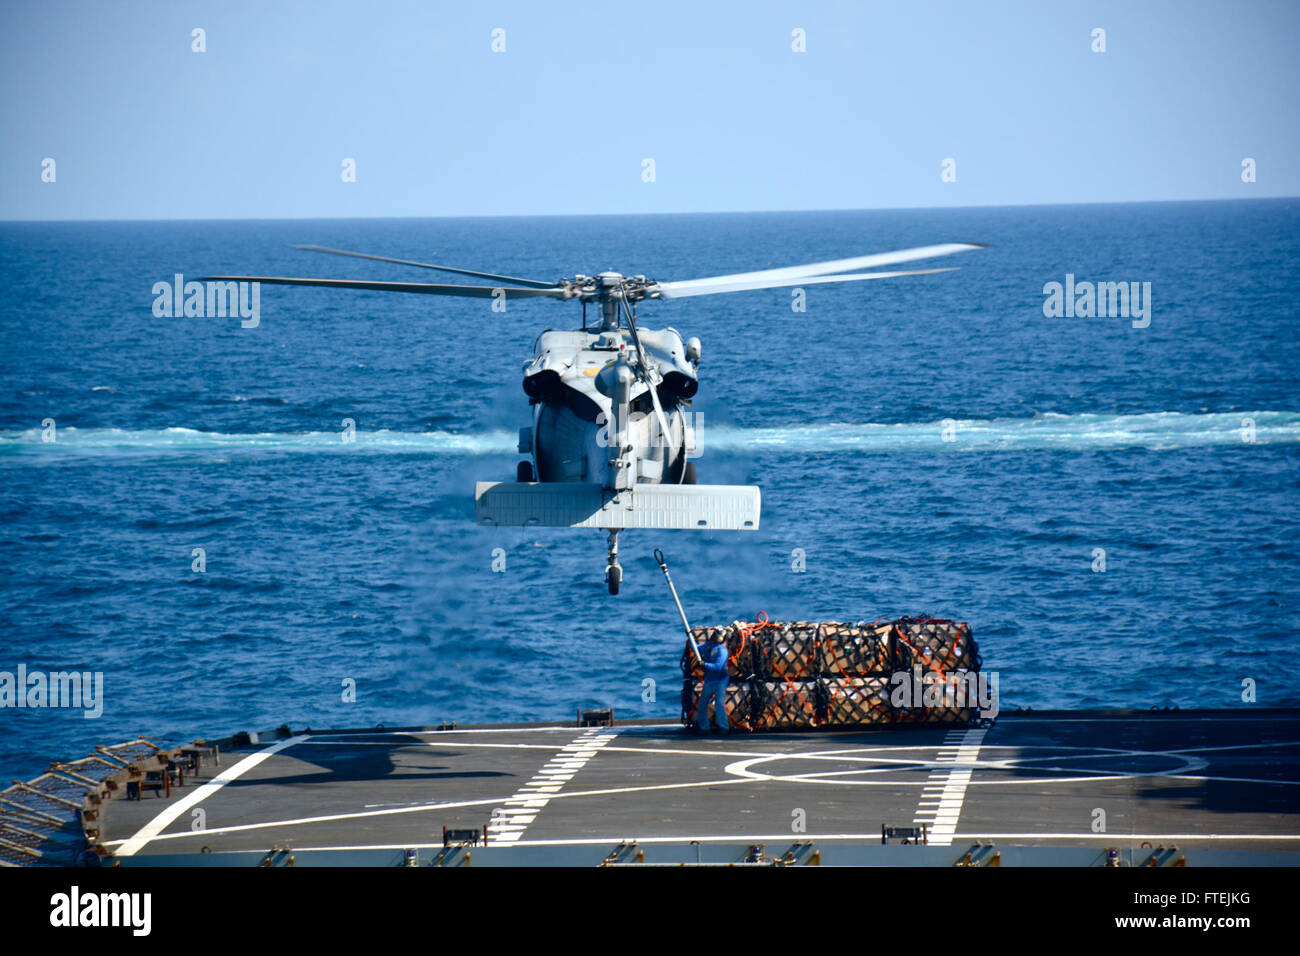 Golfo di Aden (dec. n. 17, 2014) un MH-60S Seahawk elicottero appartenente all'elicottero mare squadrone di combattimento (HSC) 23 "Jolly", conduce un rifornimento verticale tra USNS Patuxent (T-AO 201) e USS Makin Island (LHD 8) Dic. 17, 2014. Le navi sono conducendo operazioni navali negli Stati Uniti Sesta flotta area di operazioni a sostegno degli Stati Uniti per gli interessi di sicurezza nazionali in Europa e in Africa Foto Stock